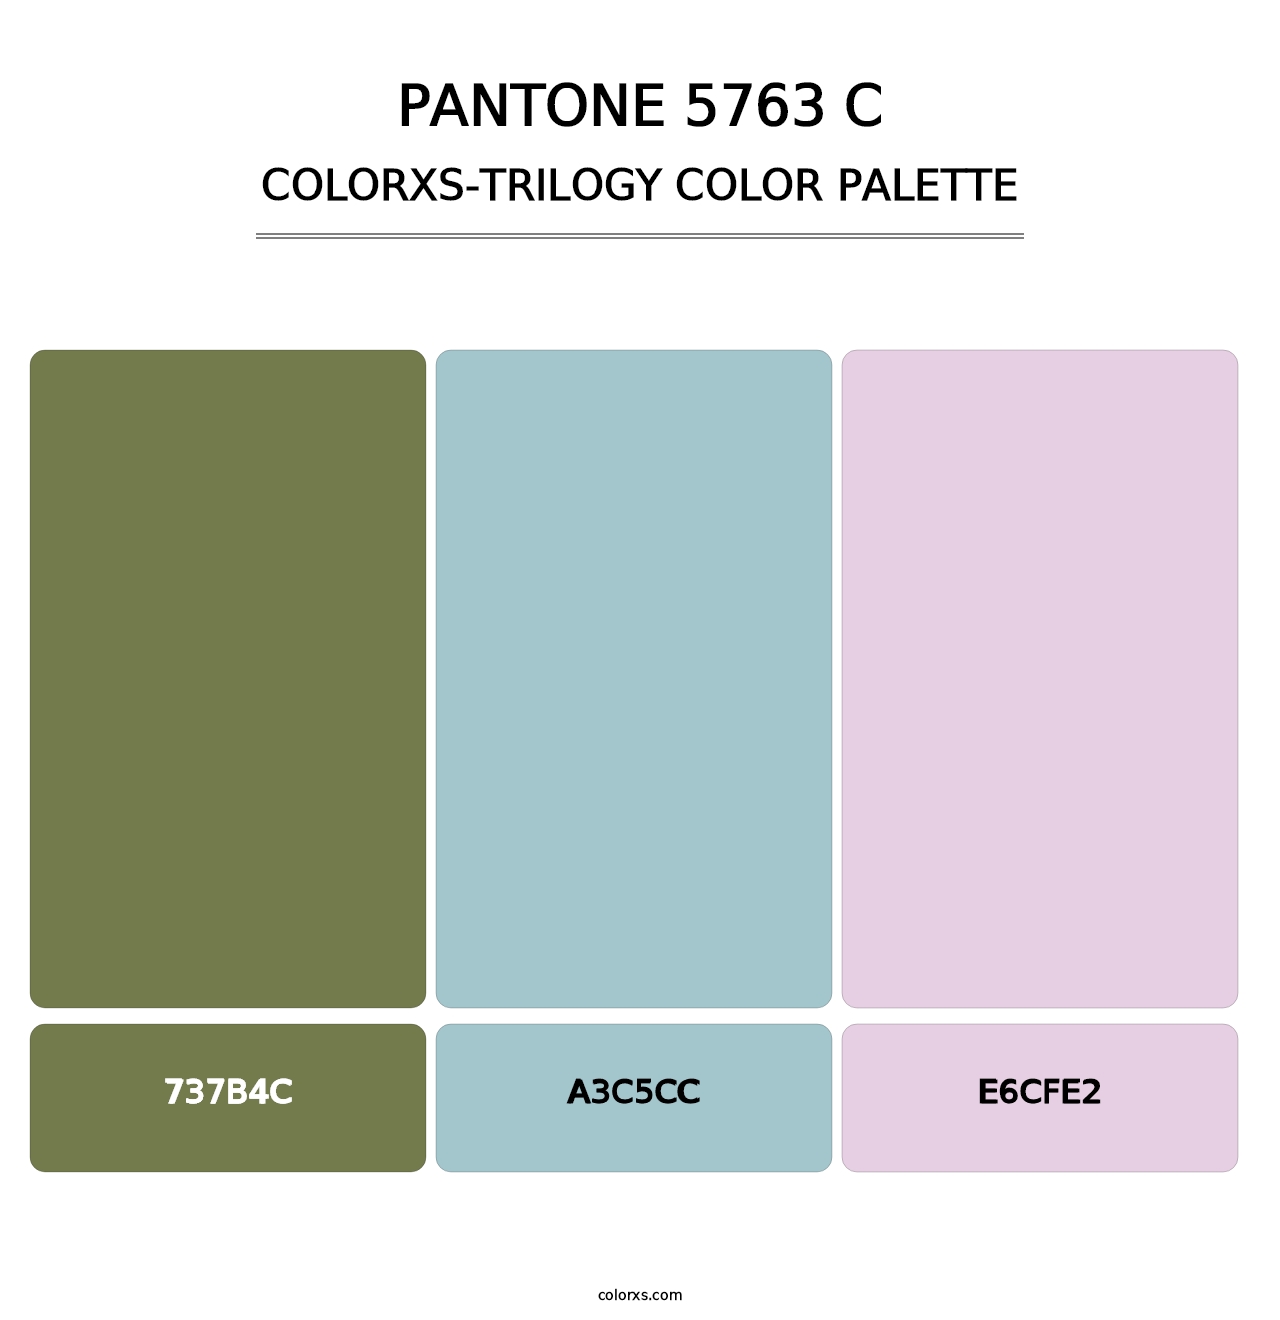 PANTONE 5763 C - Colorxs Trilogy Palette